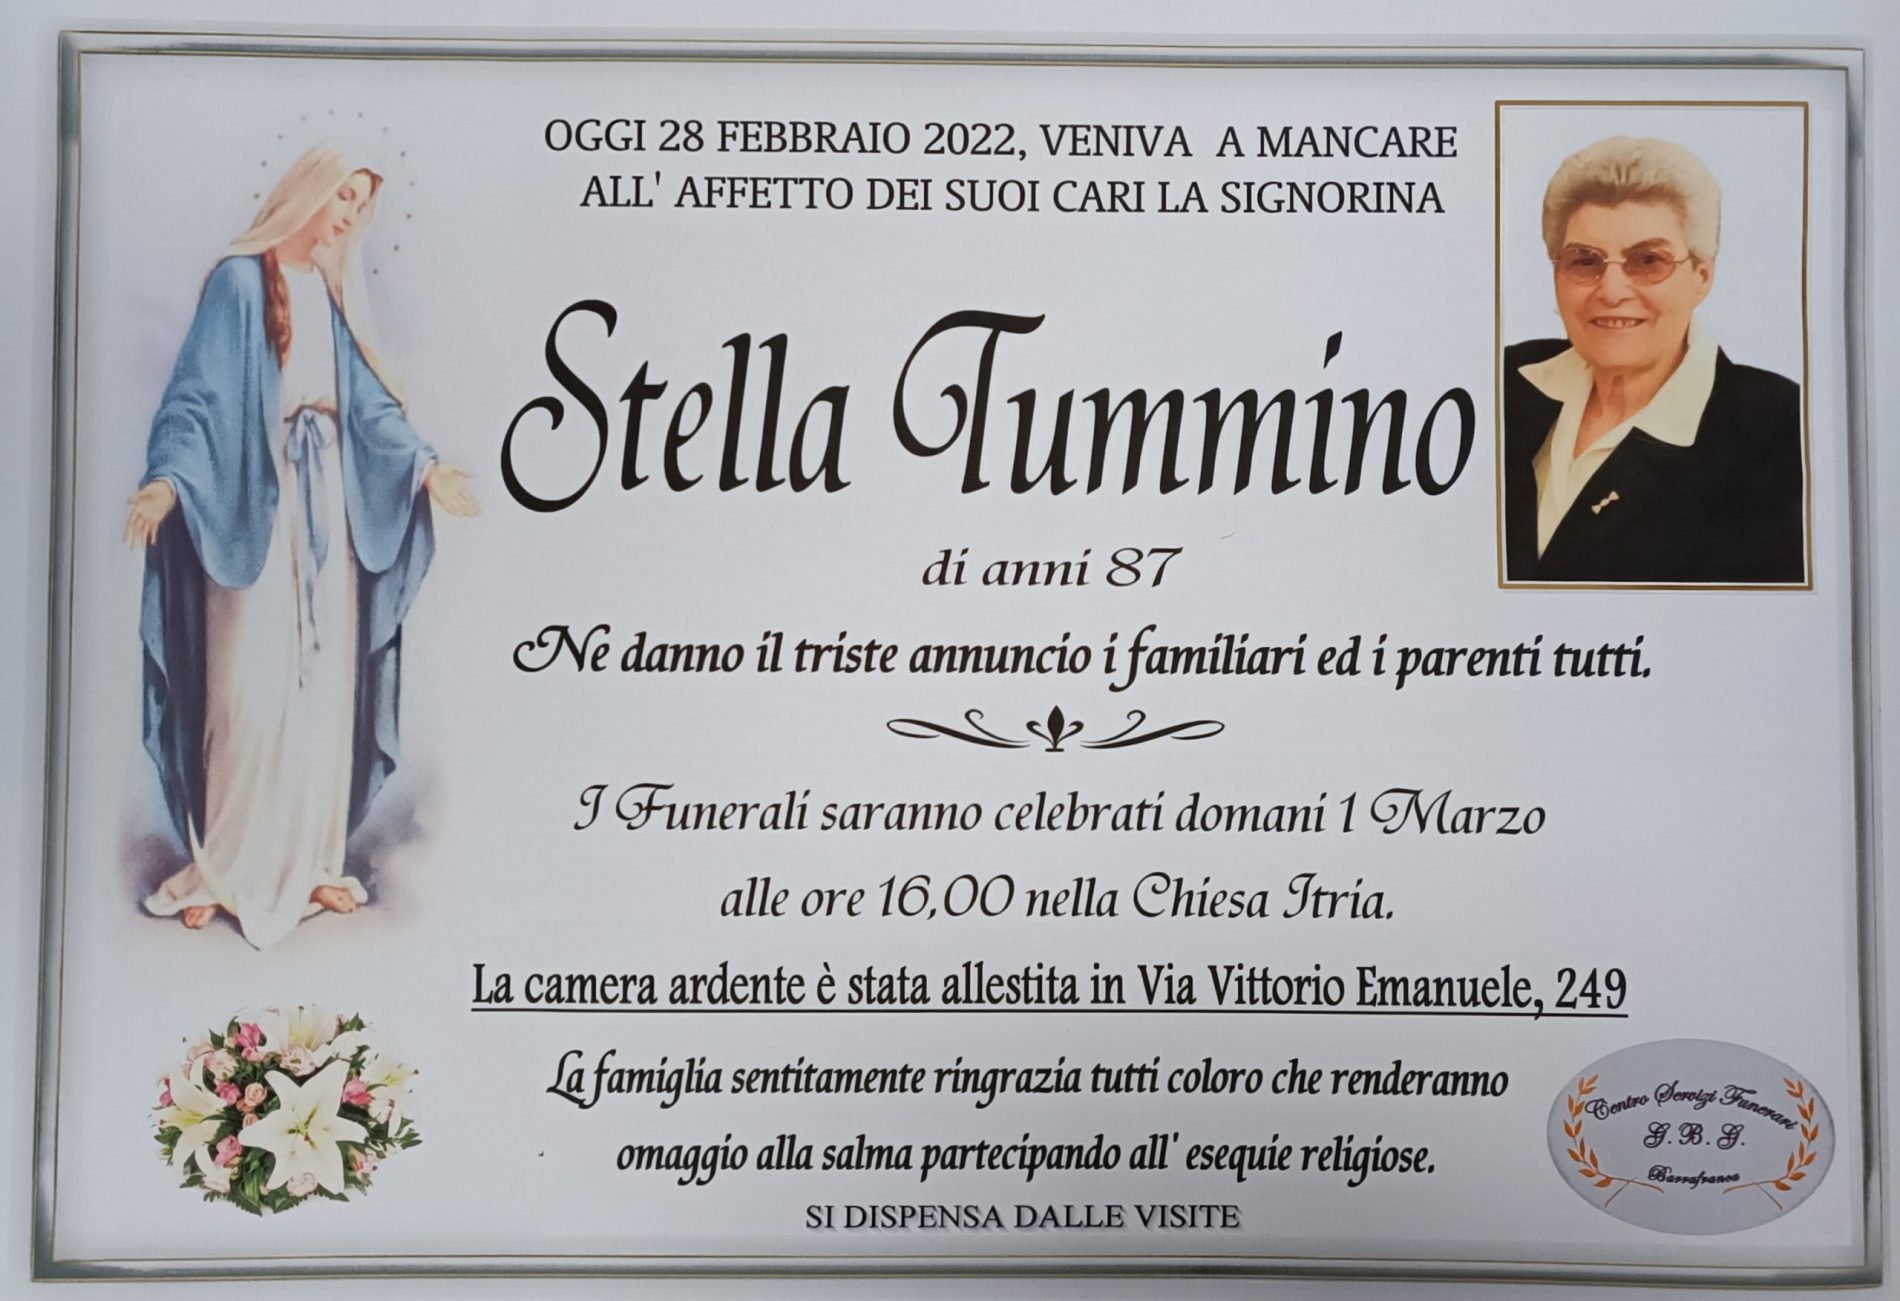 Annuncio servizi funerari agenzia G.B.G. signorina Stella Tummino di anni 87